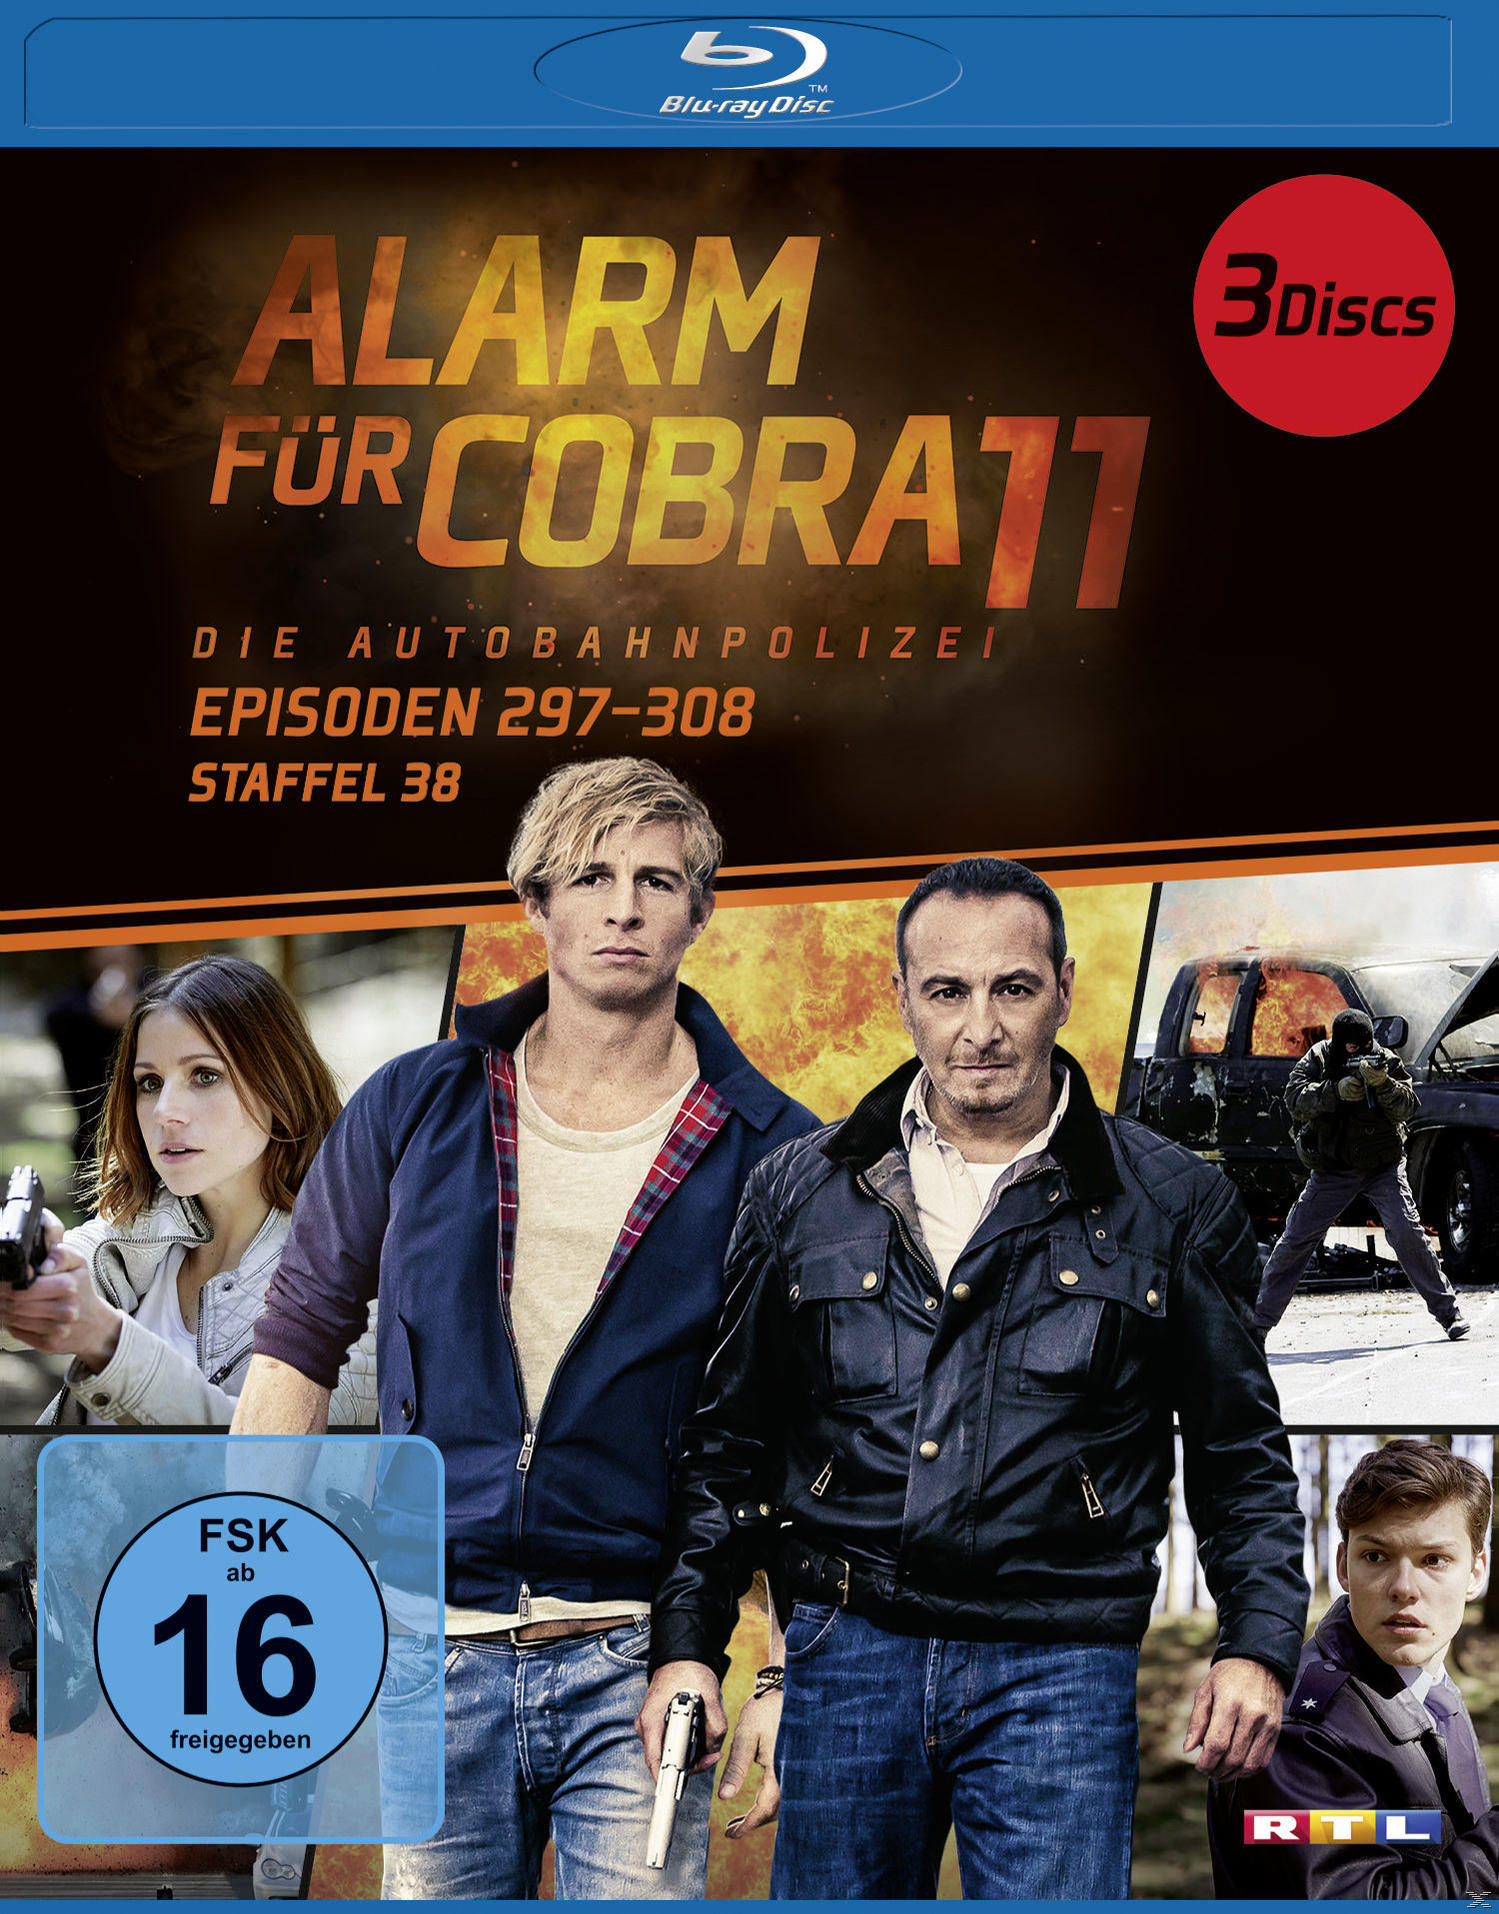 Cobra Blu-ray 38 11 Alarm - Staffel für